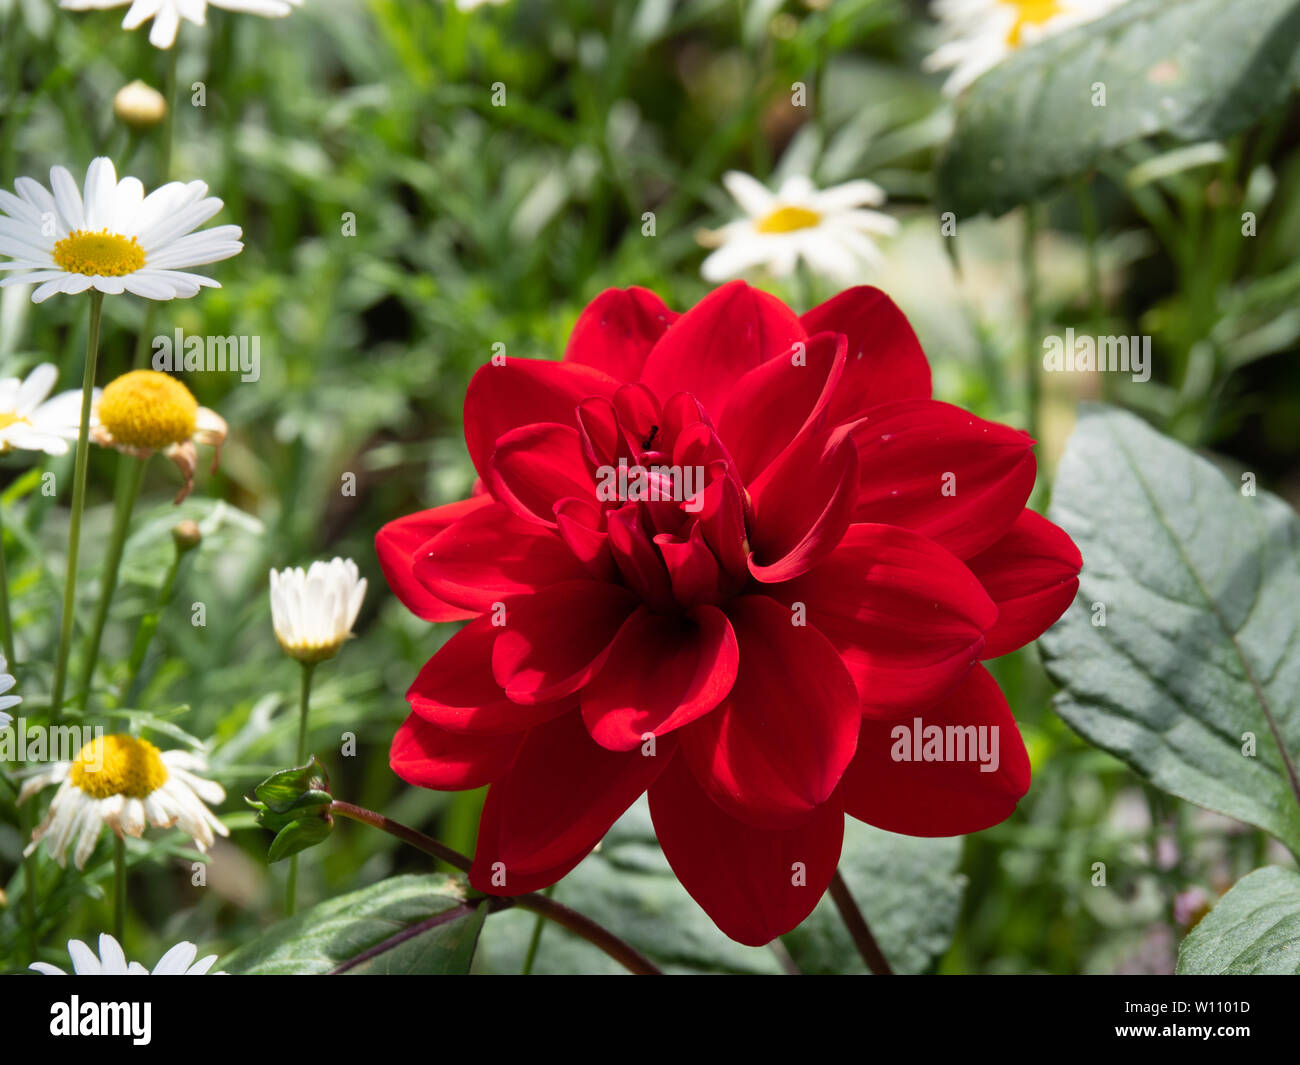 Einzelne rote Dahlie in perfektem Zustand und Form, die helle Farbe im Garten. Rote Dahlie ist ein Symbol für Macht, Kraft und Bedeutung. Stockfoto